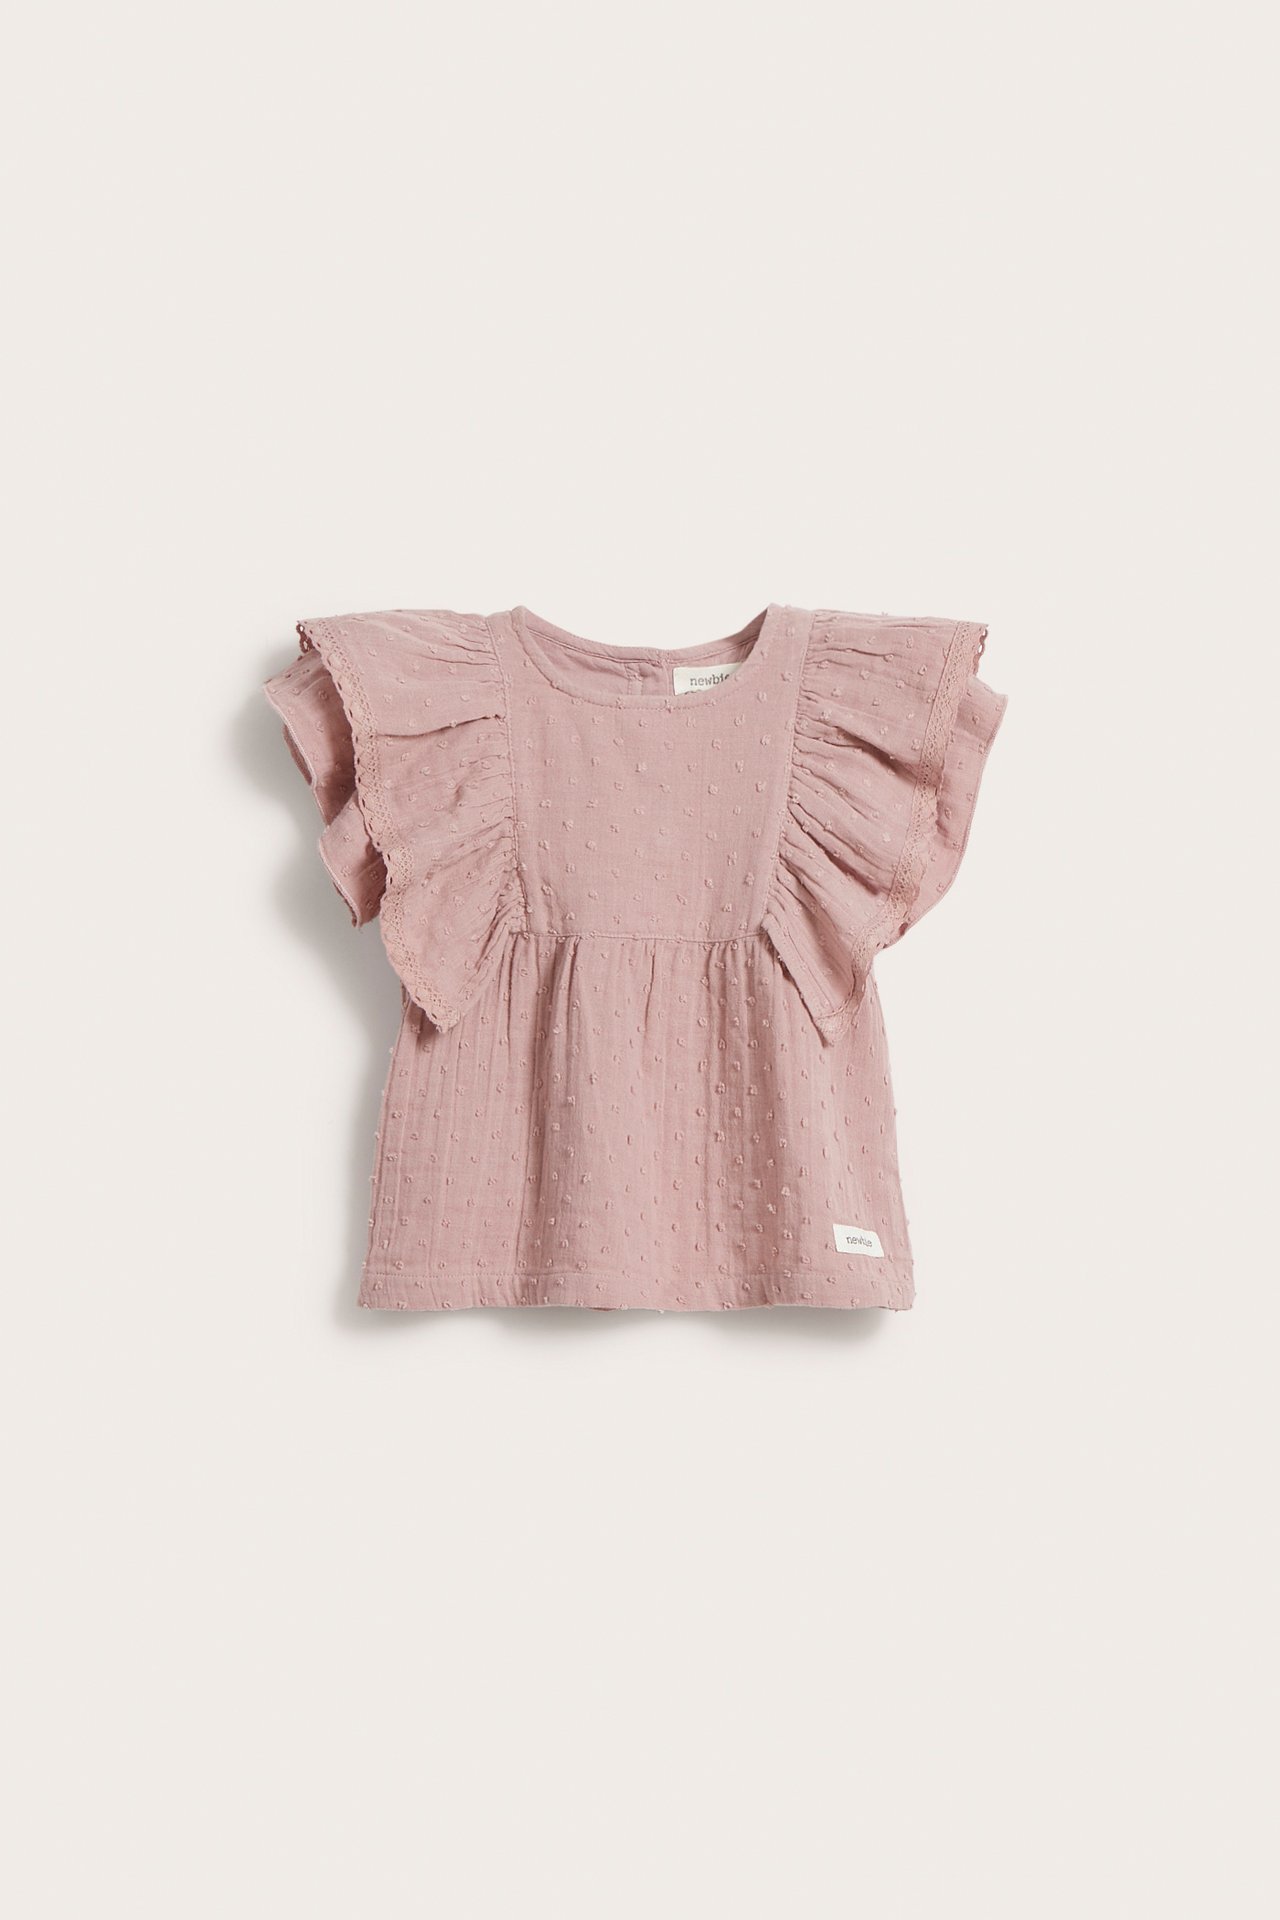 Vauvojen paitapusero, jossa on röyhelö